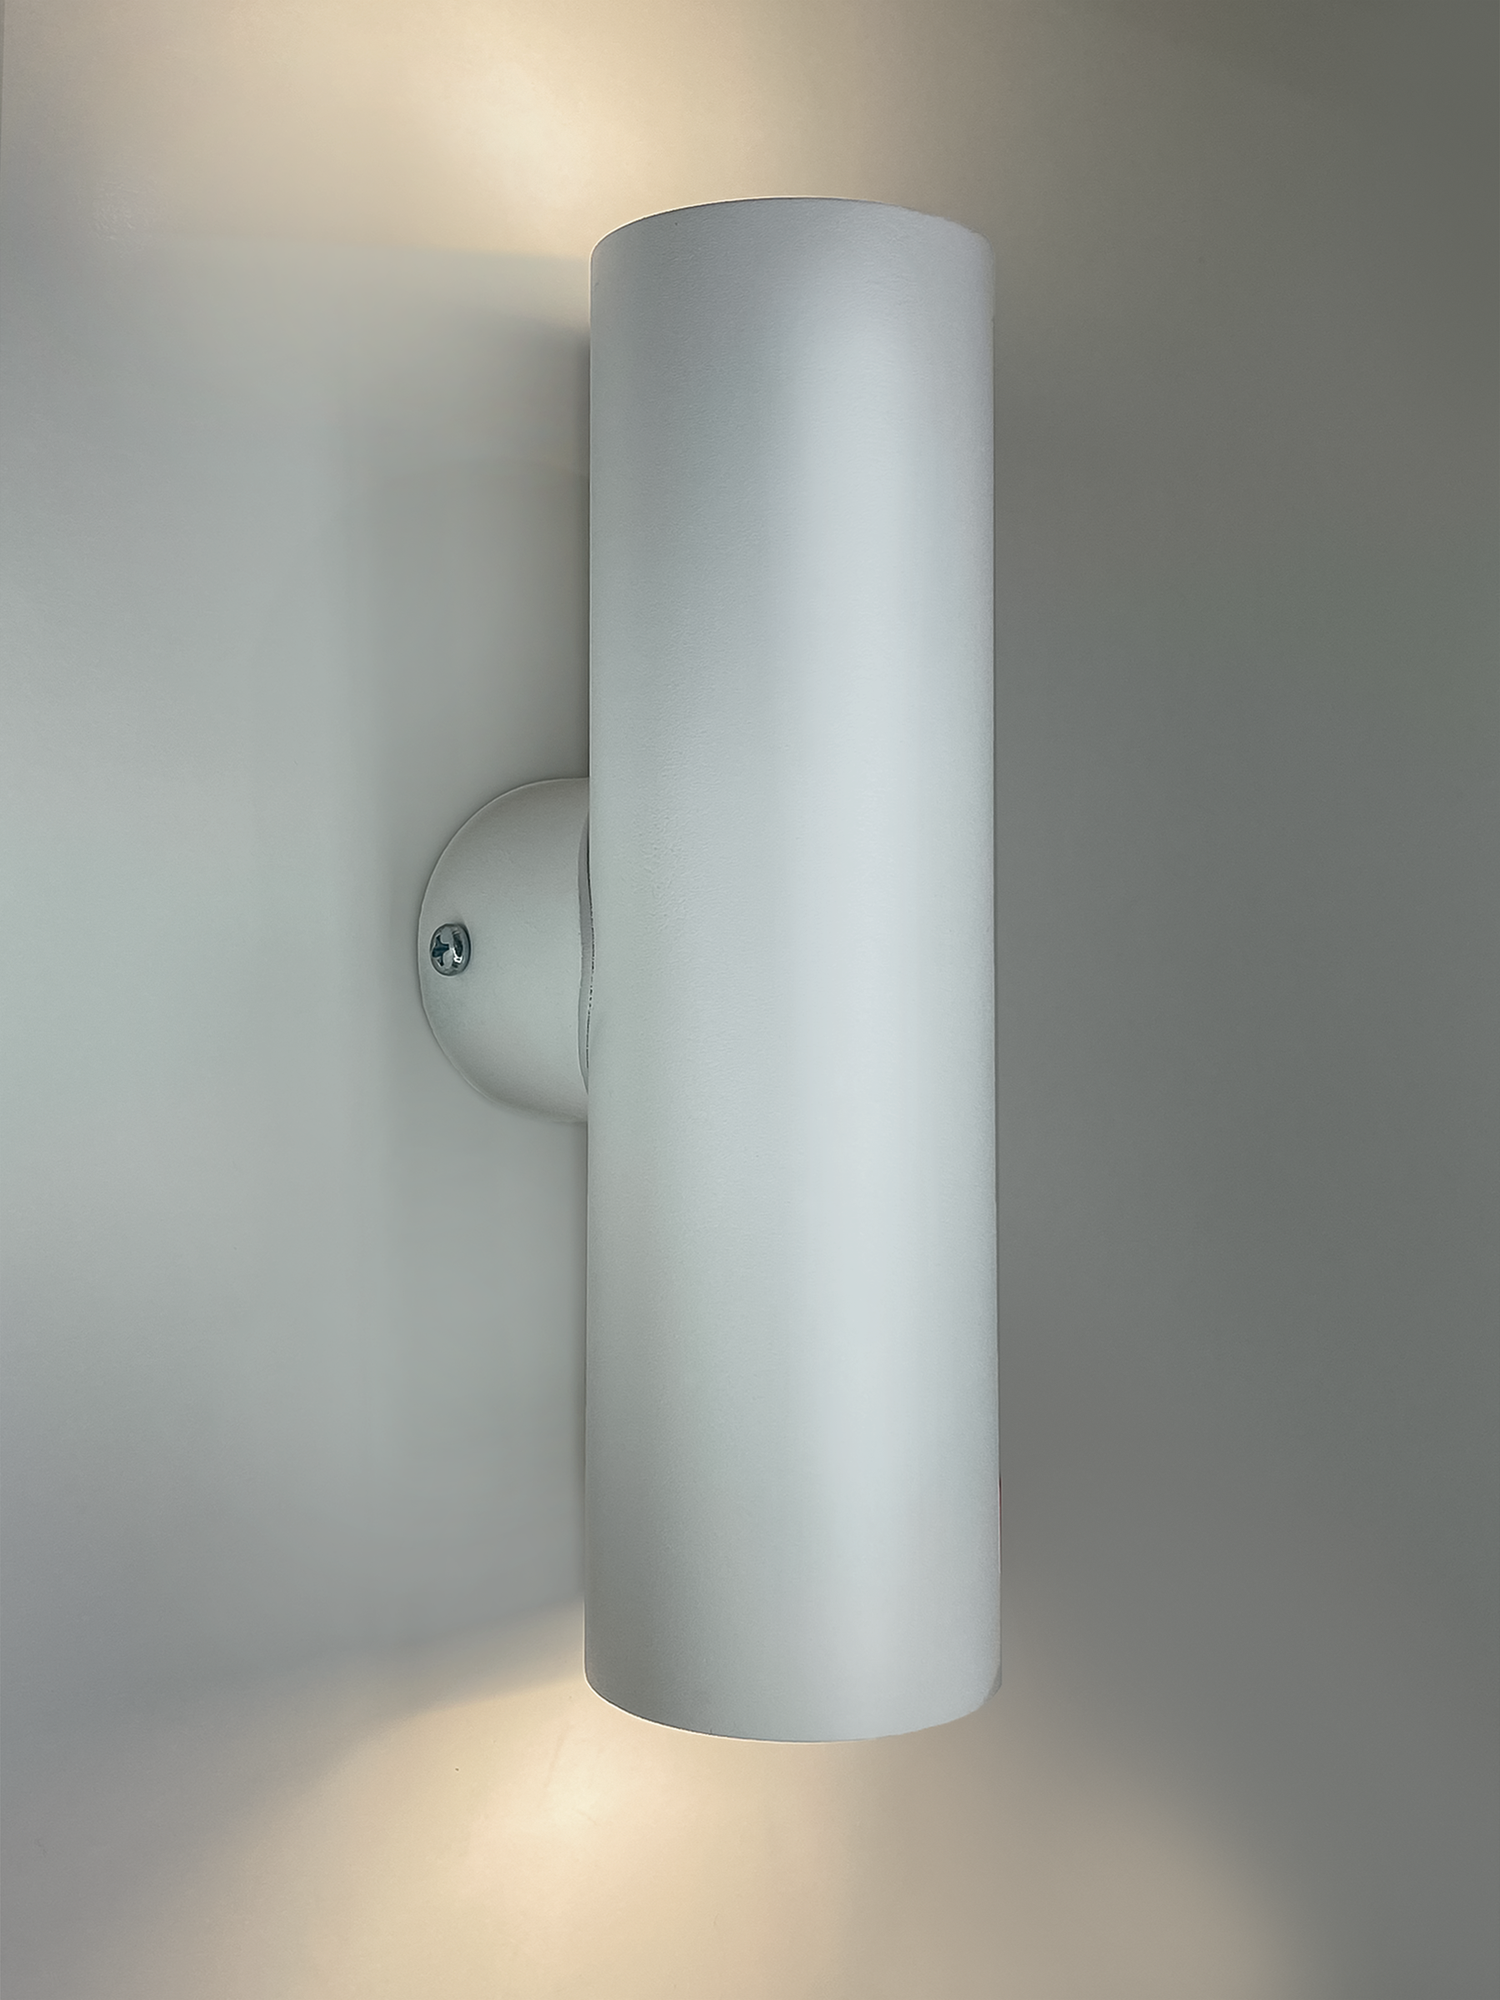 Интерьерный настенный точечный светильник "INTERIOR-TWIN-R-S", цвет белый